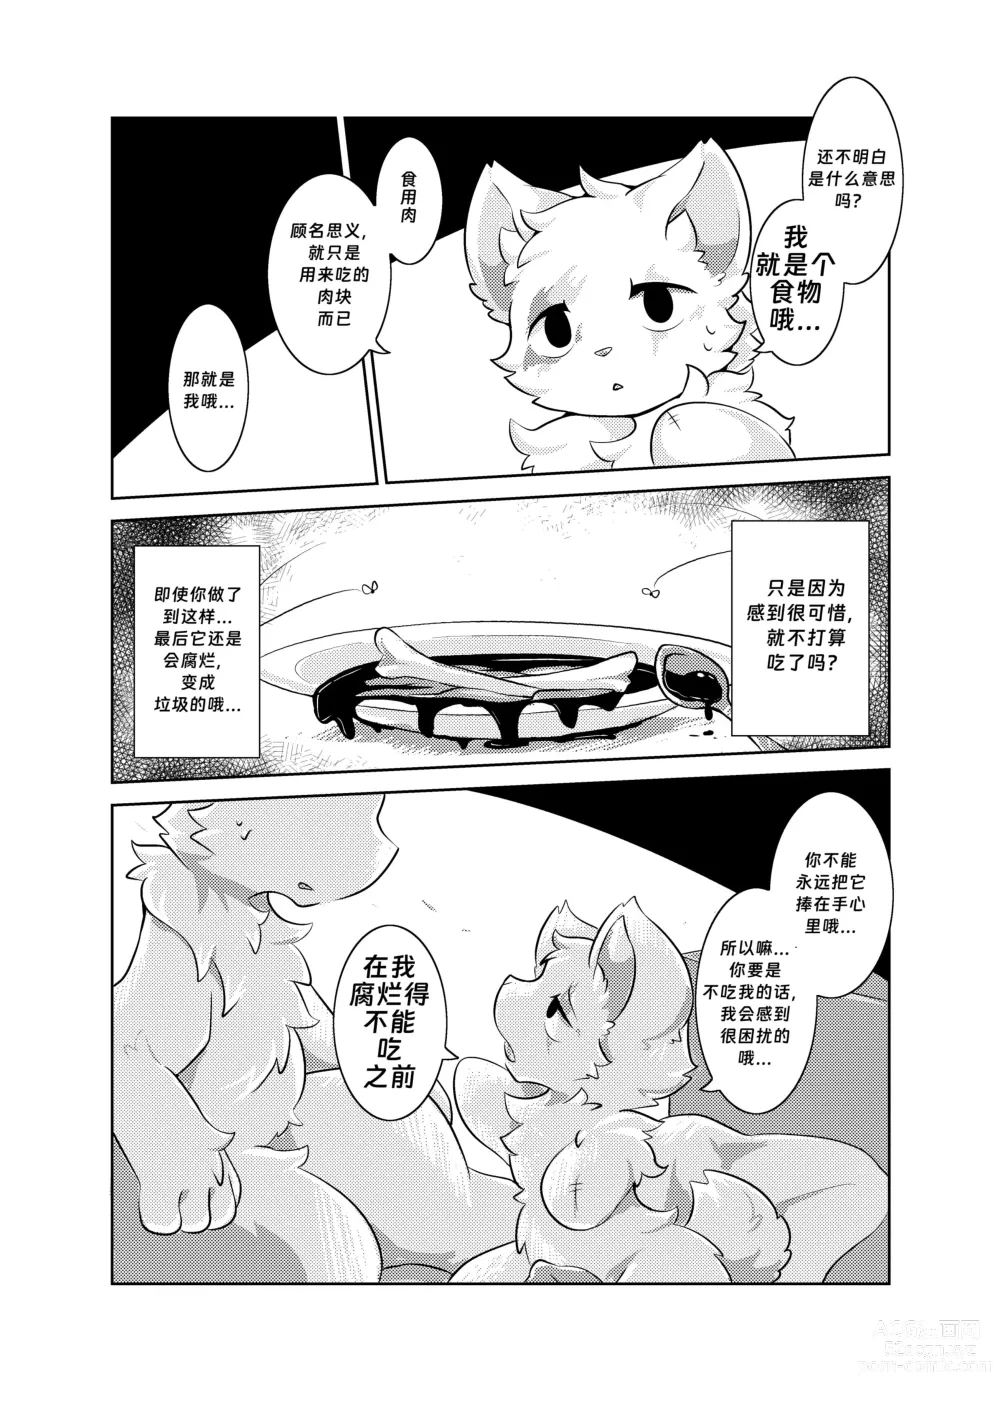 Page 12 of doujinshi Bokuyo motsuni no oishii seikatu.R-18G